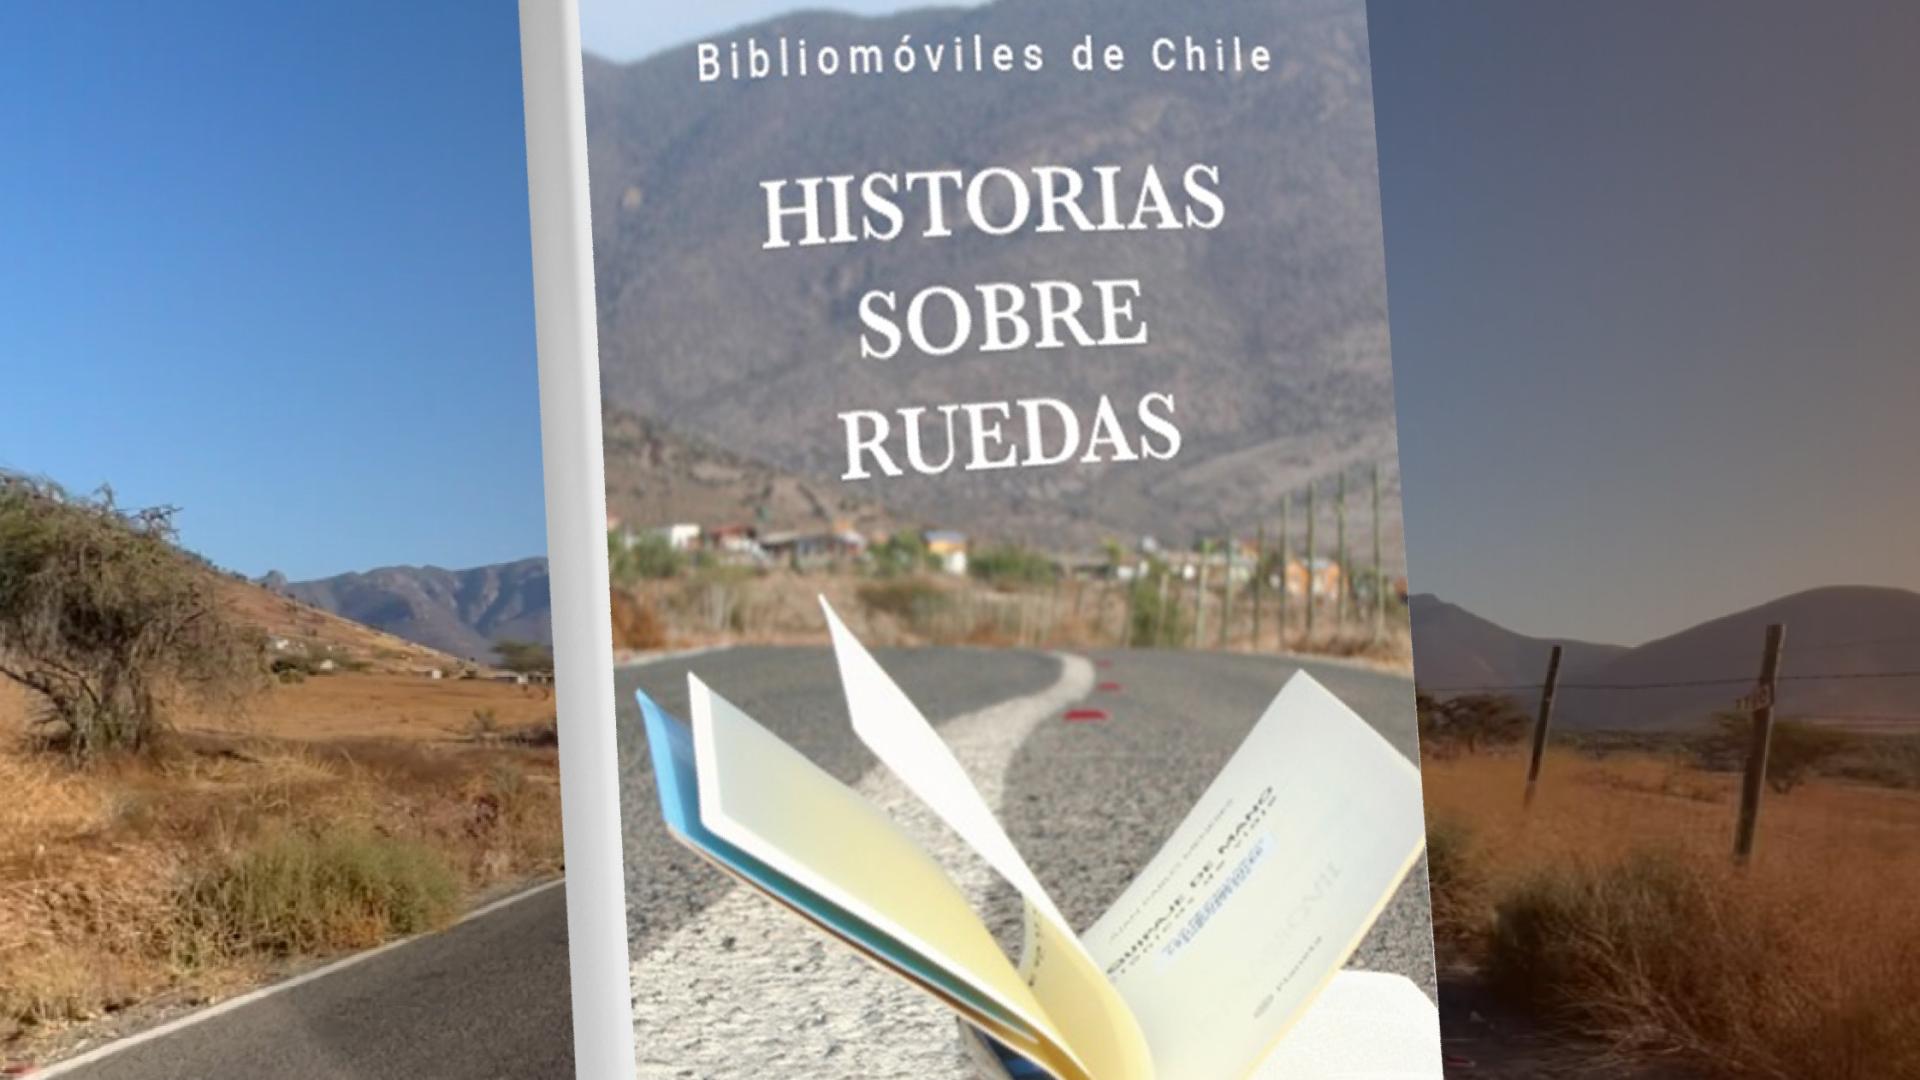 La nueva edición del libro que retrata la historia de los bibliomóviles chilenos